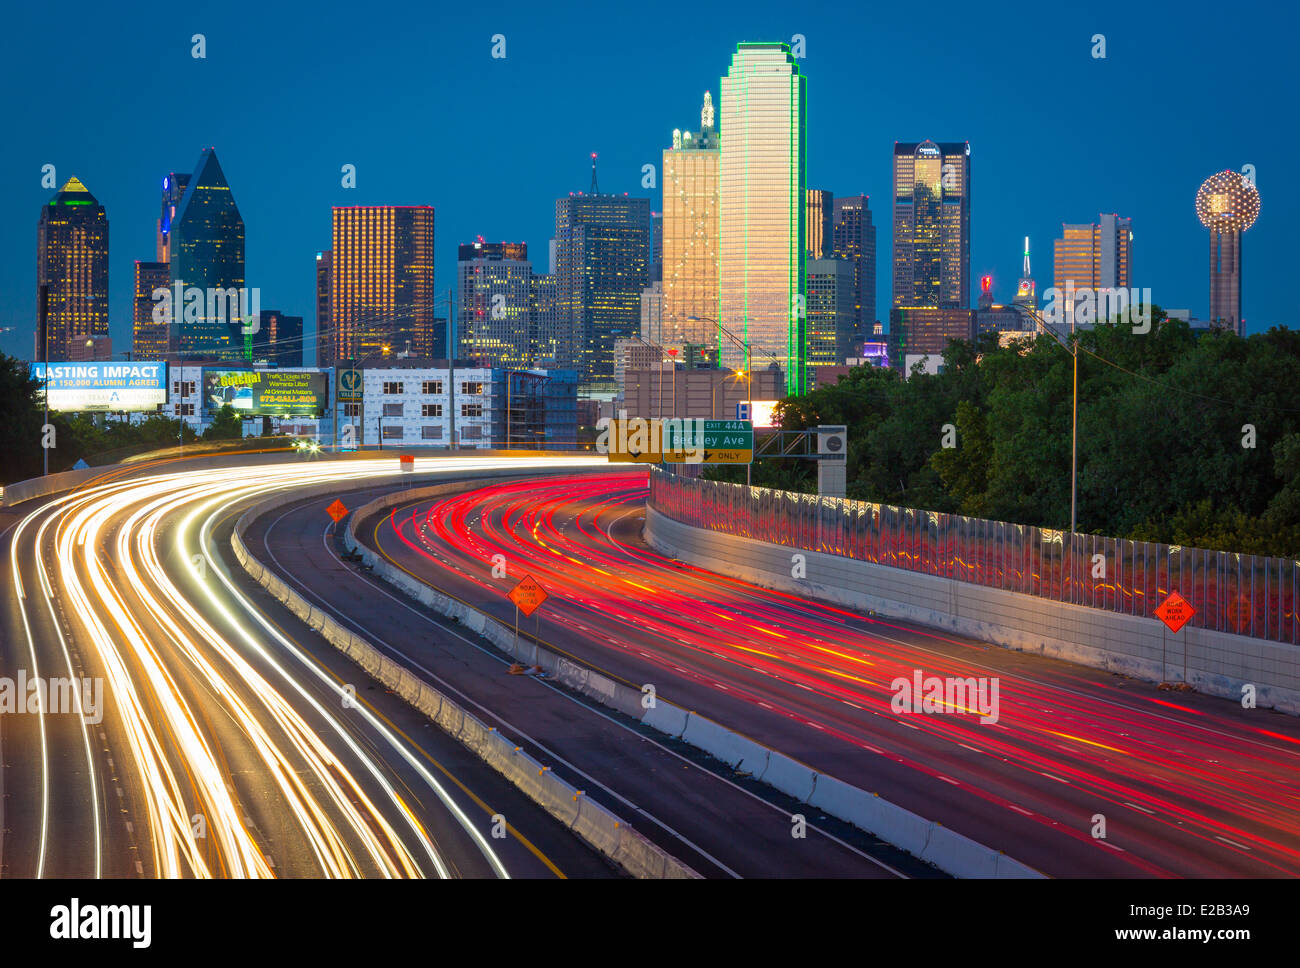 Dallas est la neuvième ville la plus peuplée des États-Unis d'Amérique et la troisième ville la plus peuplée de l'état du Texas Banque D'Images